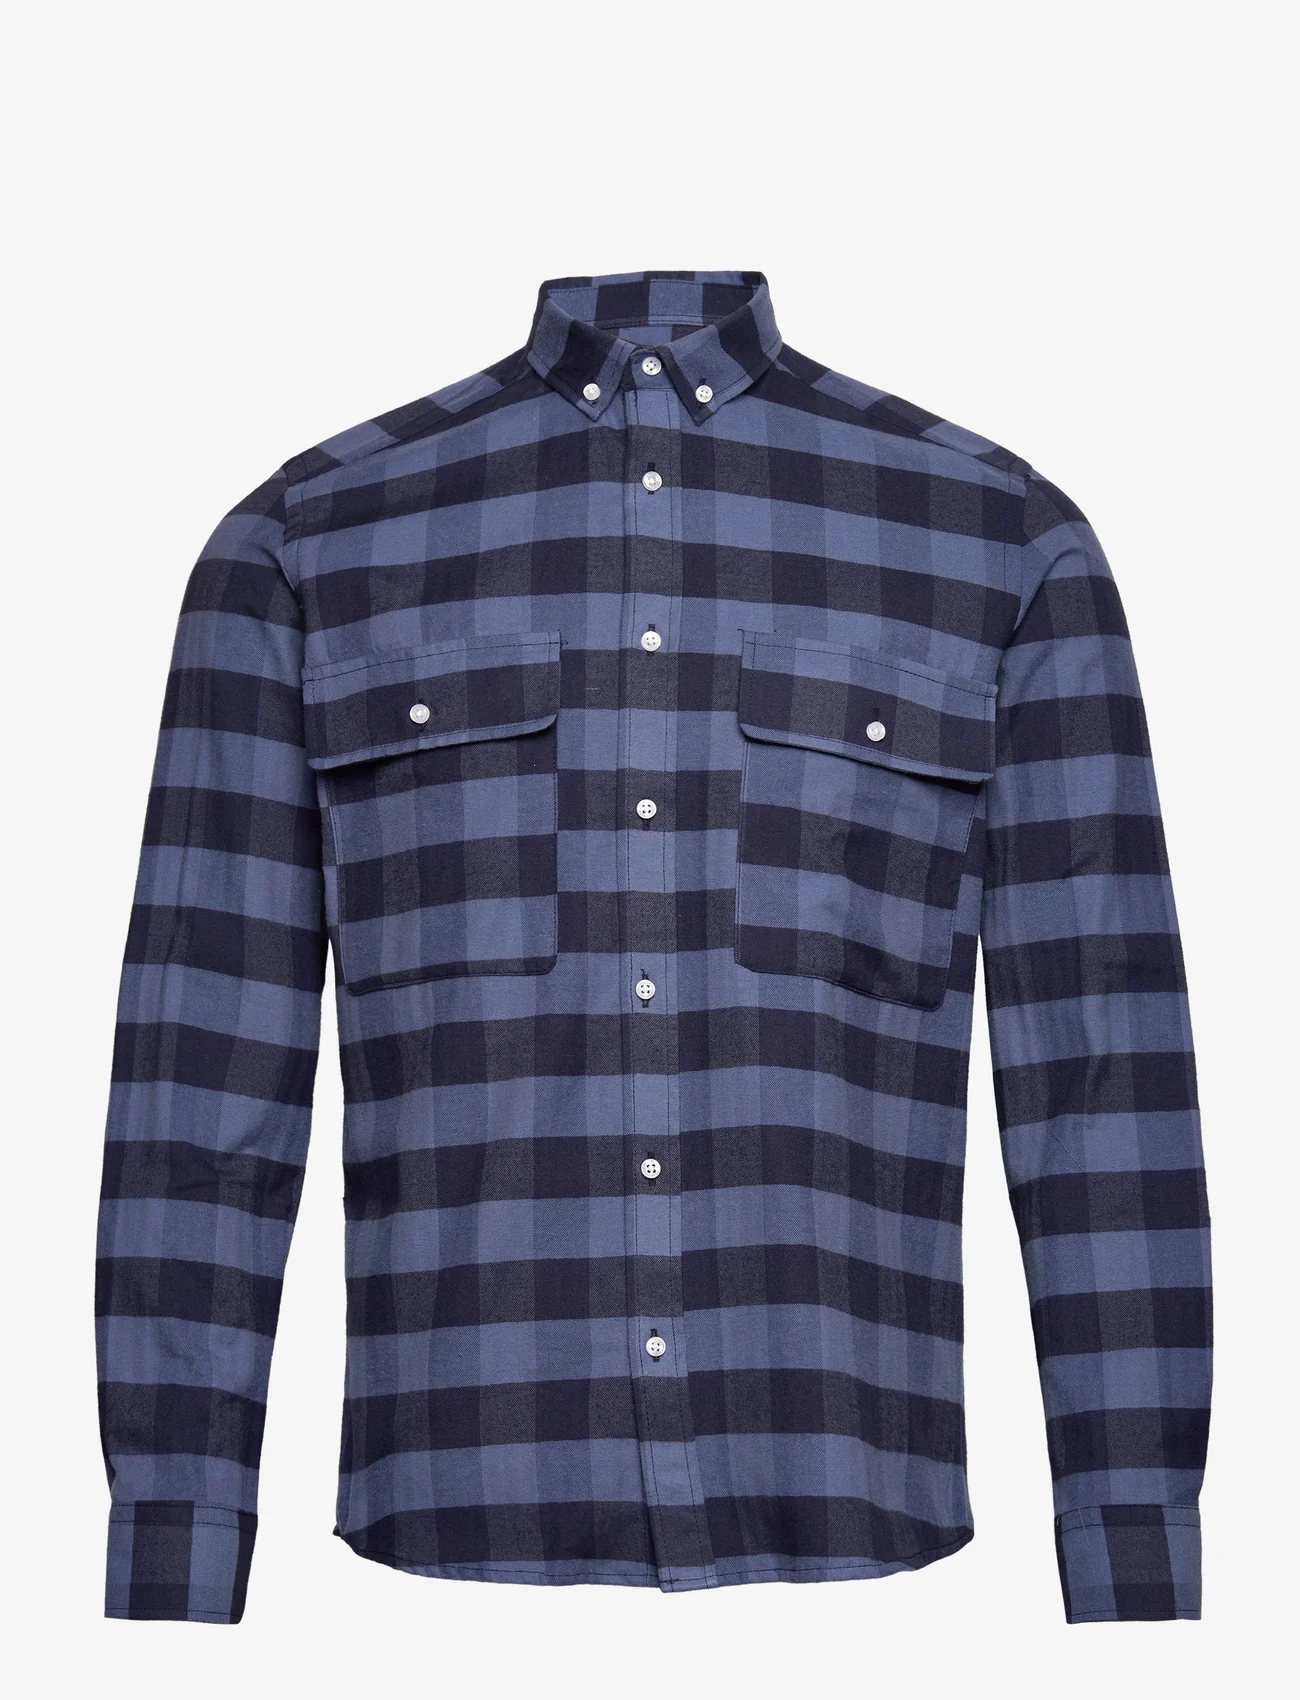 Clean Cut Copenhagen - Sälen Flannel 11 LS - checkered shirts - azure blue - 0